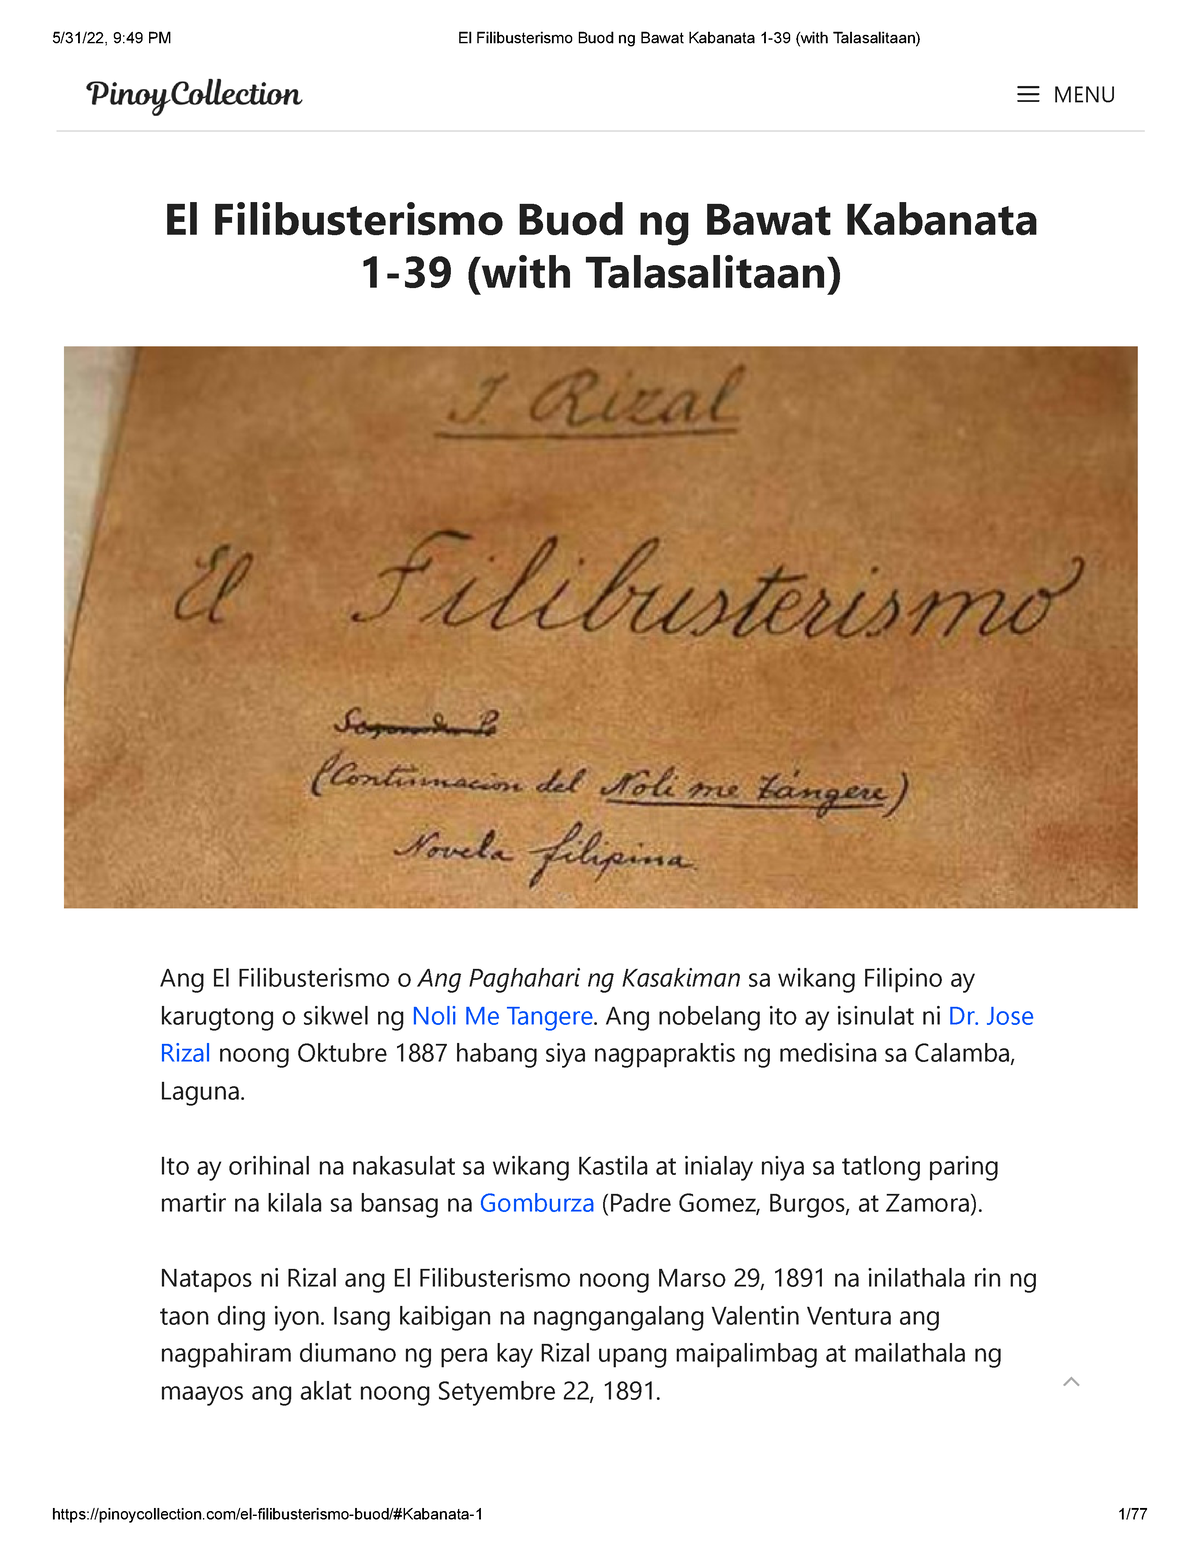 book review ng el filibusterismo tagalog